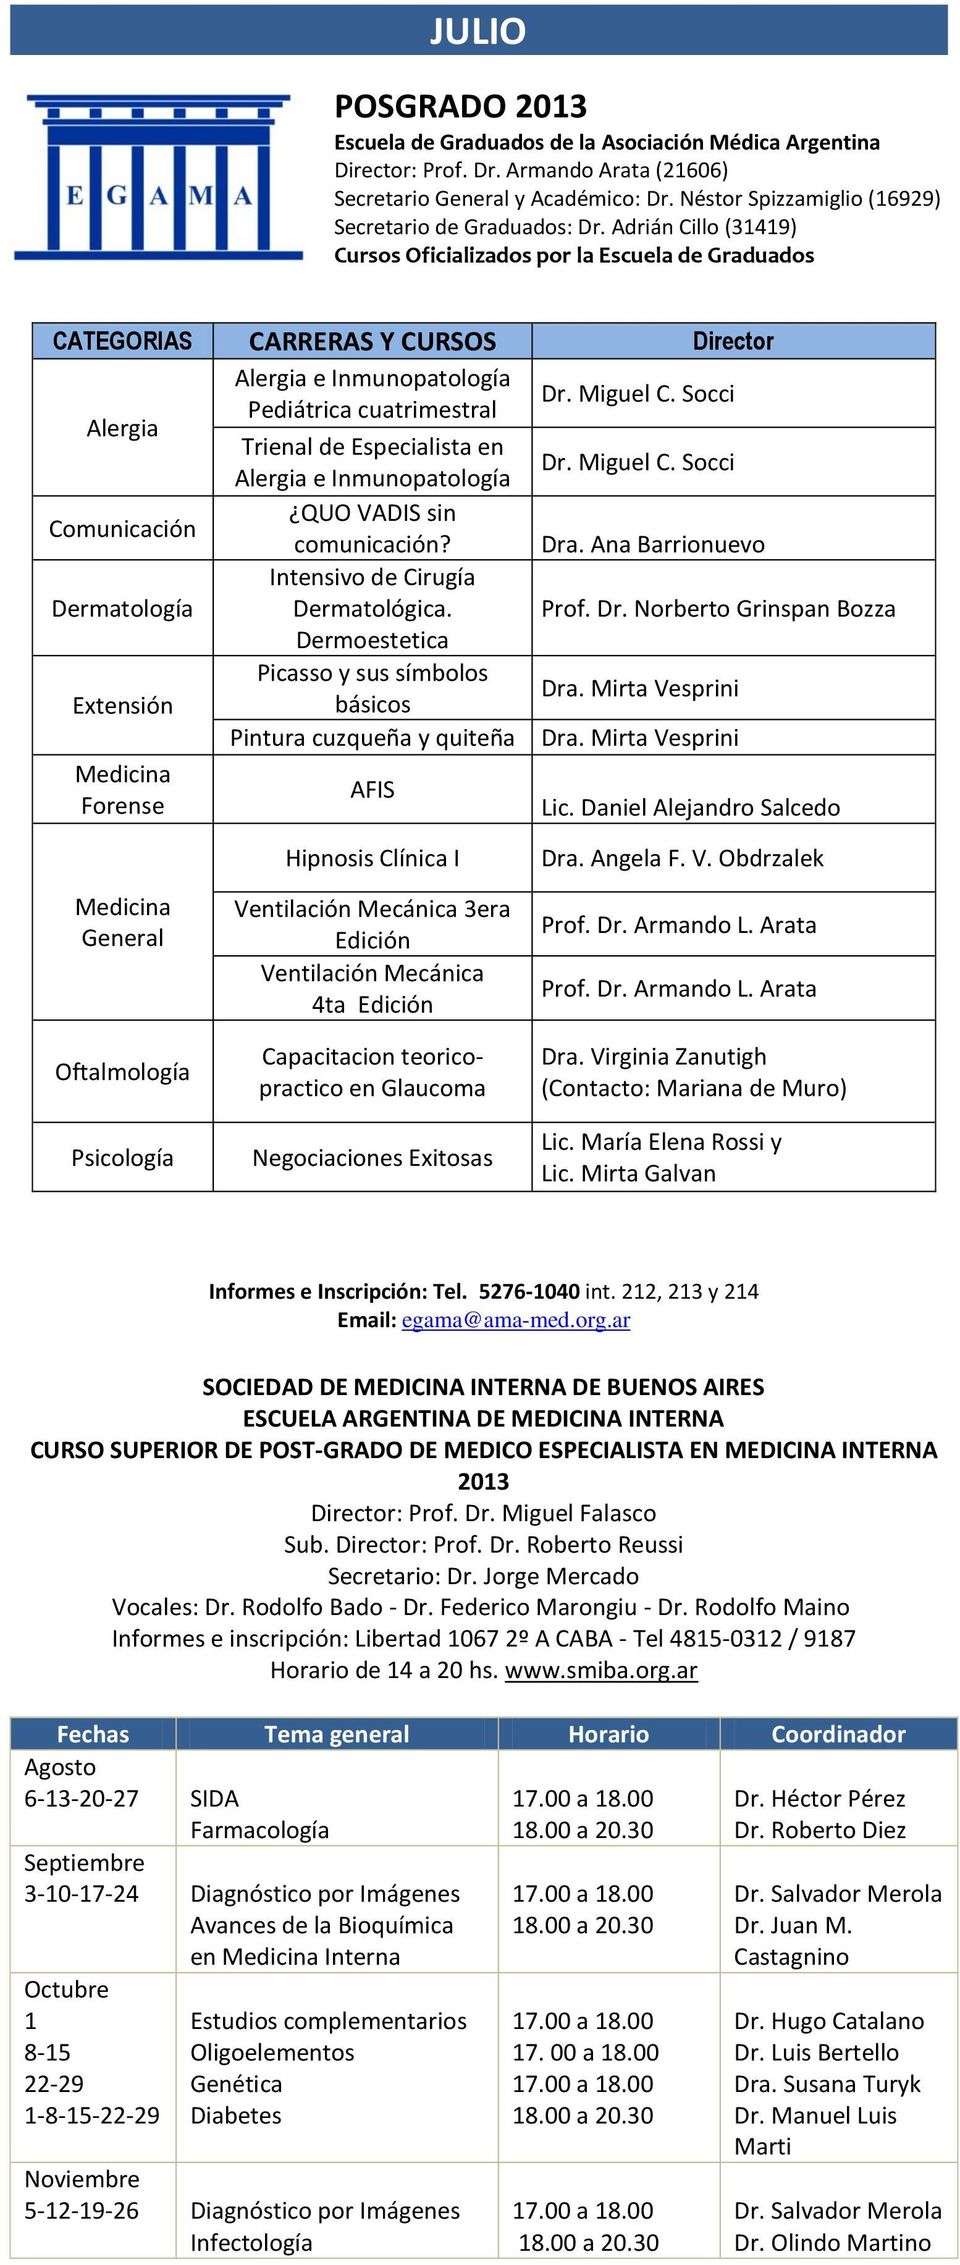 Adrián Cillo (31419) Cursos Oficializados por la Escuela de Graduados CATEGORIAS CARRERAS Y CURSOS Director Alergia Alergia e Inmunopatología Pediátrica cuatrimestral Dr. Miguel C.